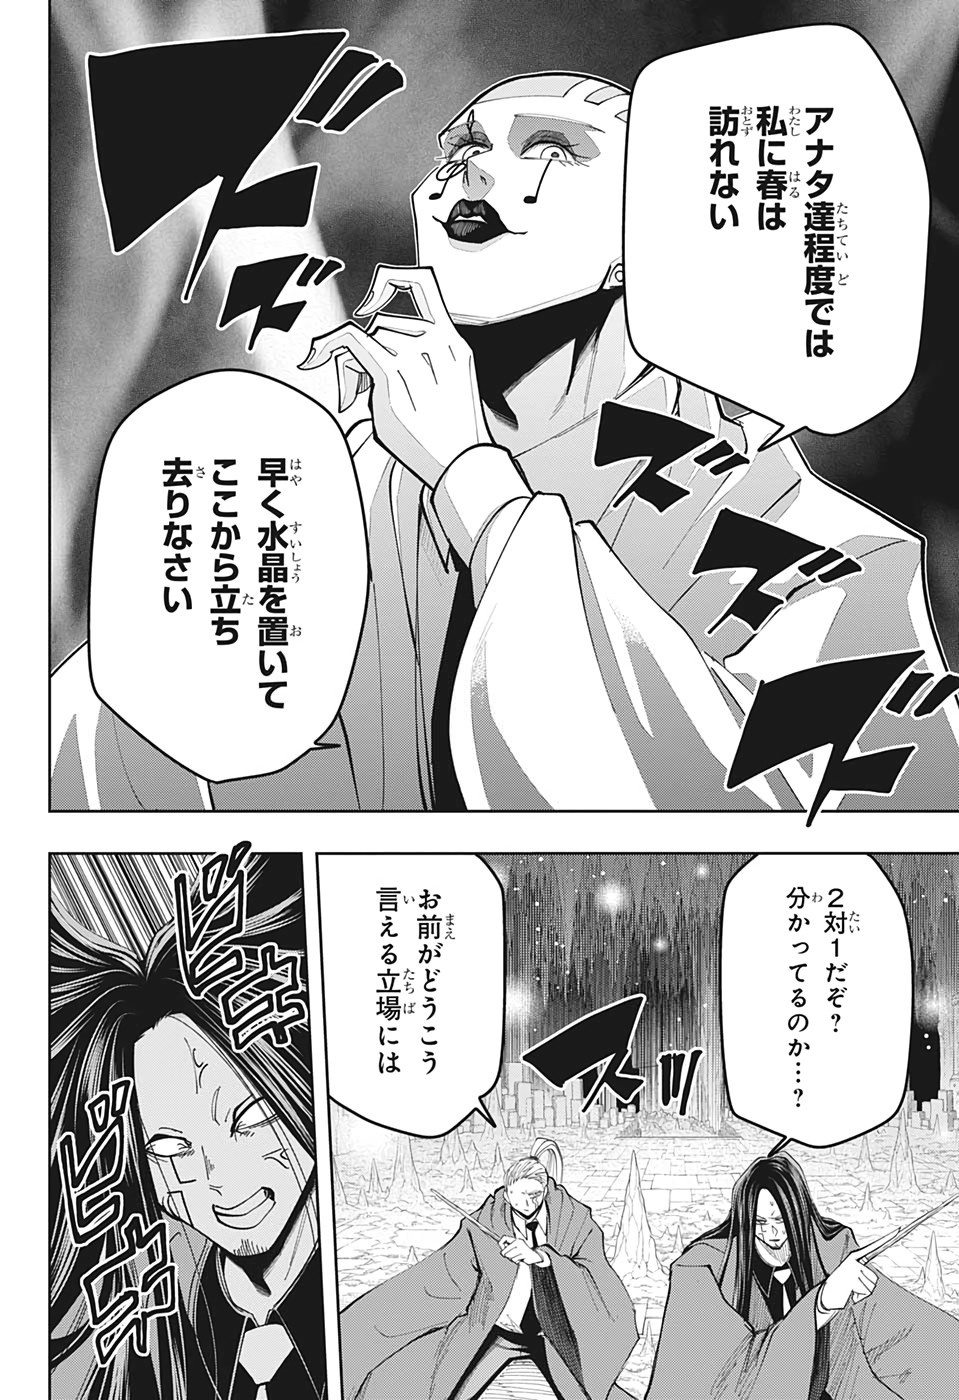 マッシュル -MASHLE- 第55話 Raw - Mangakoma - 漫画koma - 漫画raw